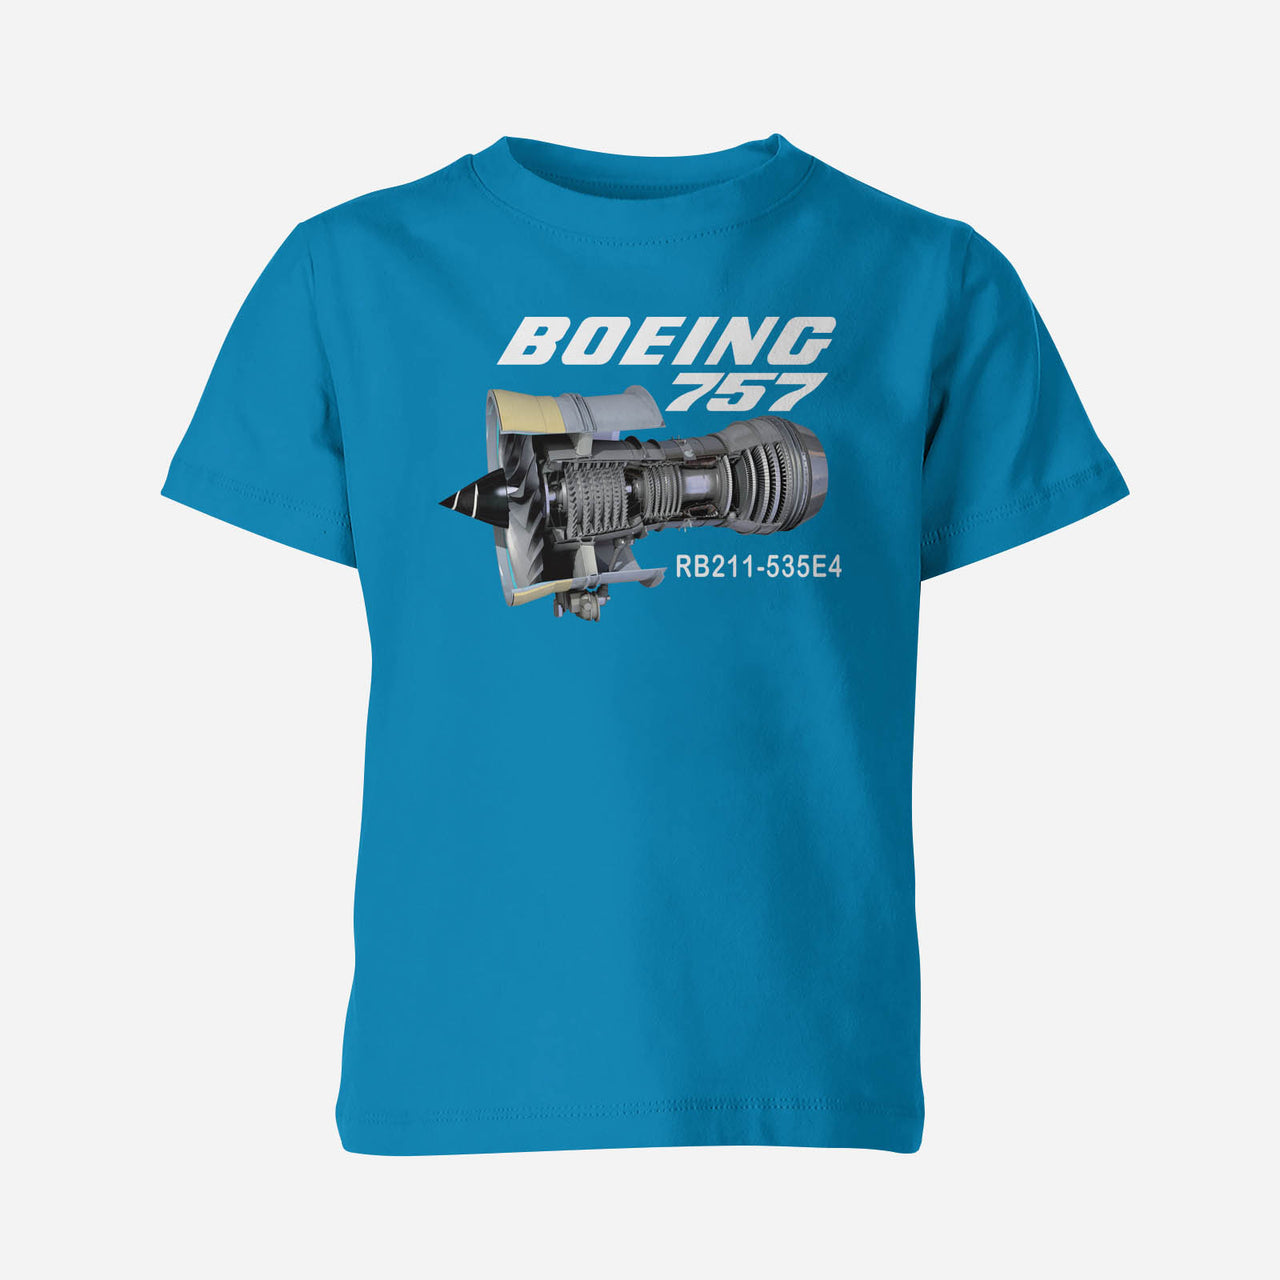 Boeing 757 & Rolls Royce Engine (RB211) Engine Designed Children T-Shirts